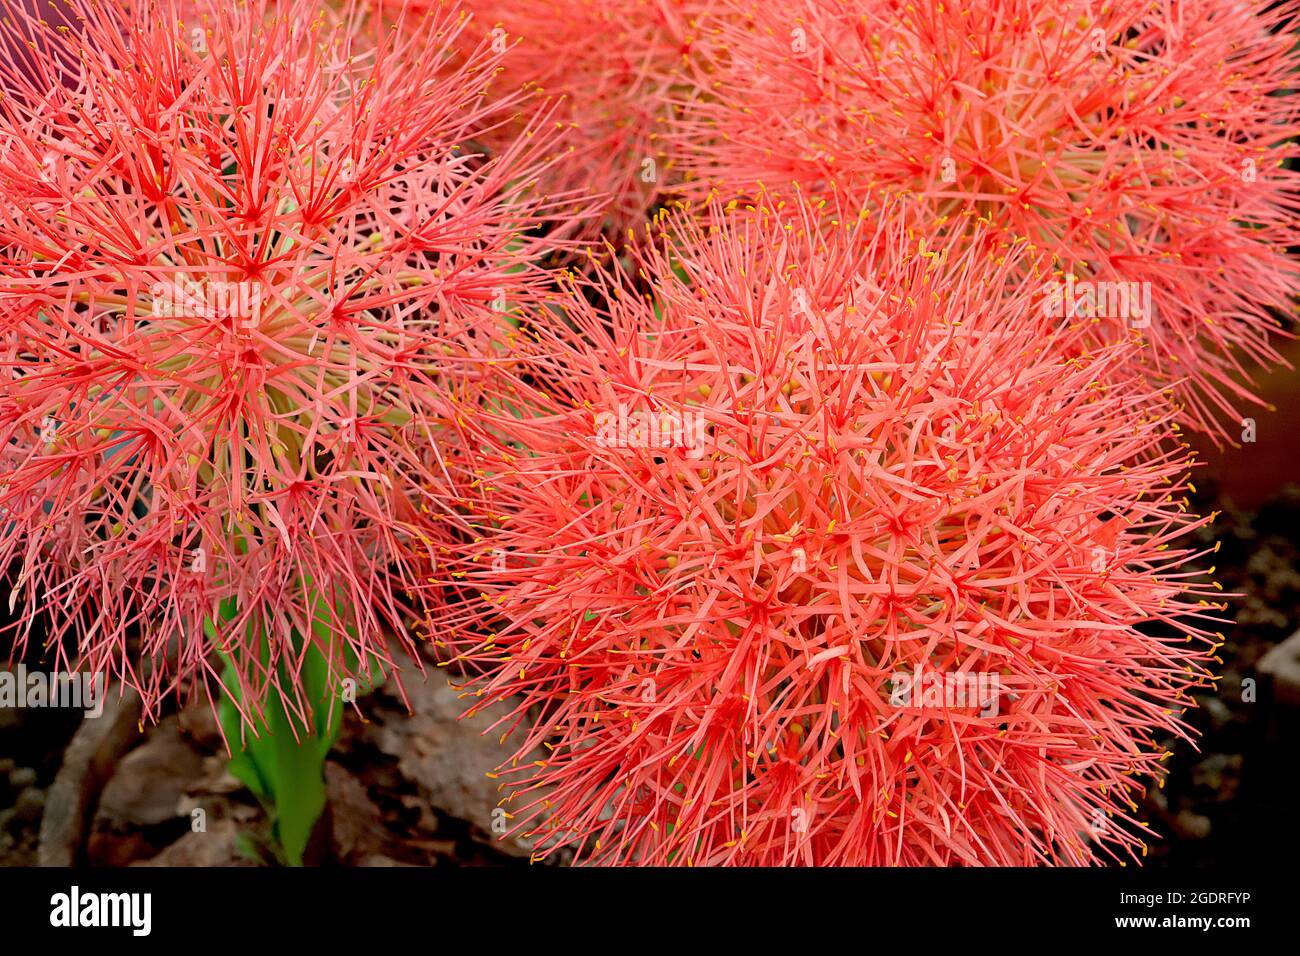 Scaxodus multiflorus Blood Lily – große kugelförmige Blütentrauben aus allium-ähnlichen Blüten mit sehr schmalen roten orangen Blütenblättern an sehr dicken Stielen, Juli, Großbritannien Stockfoto